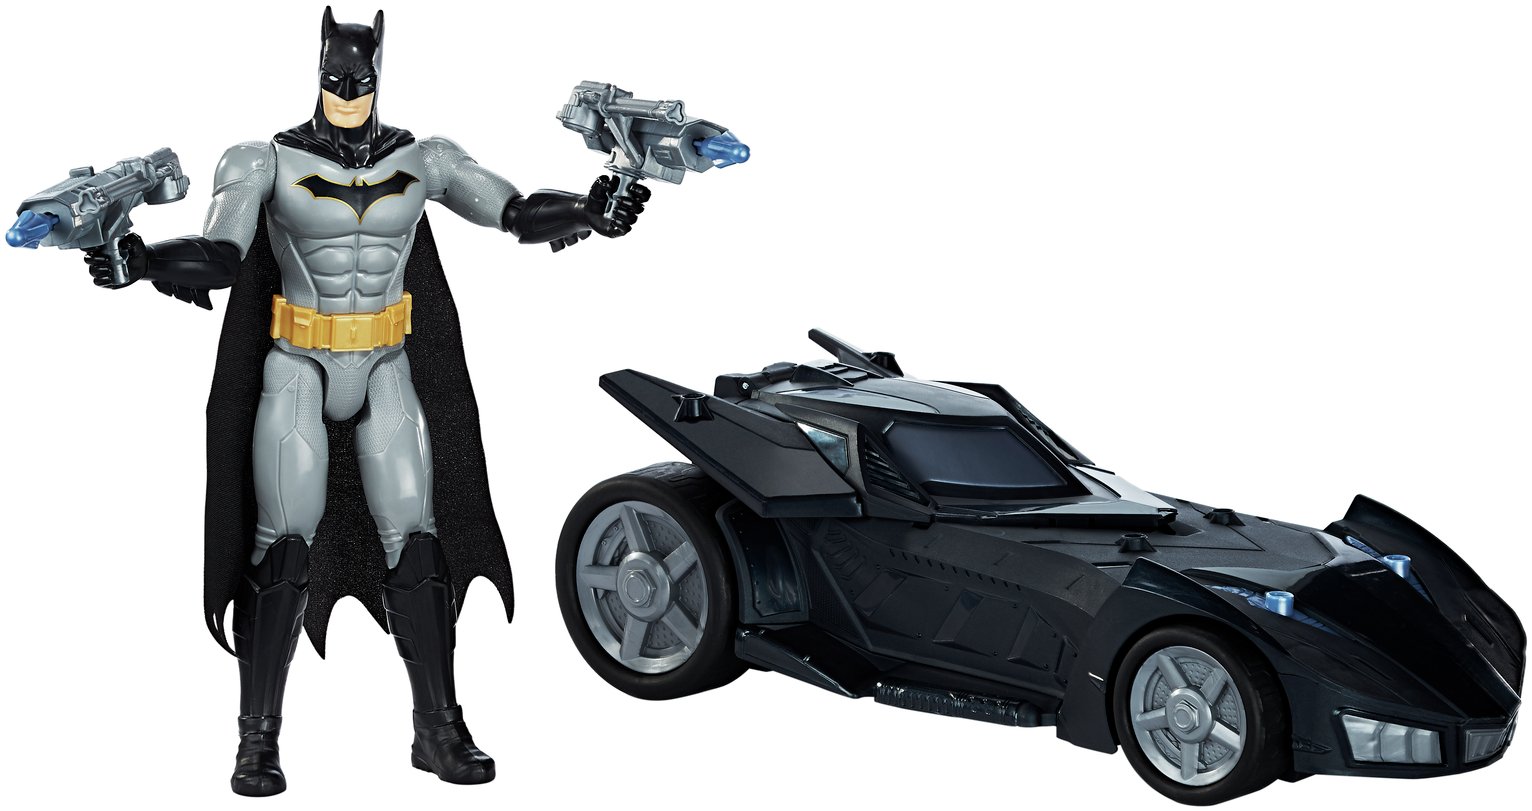 Justice League Action Twin Blast Batman & Batmobile review